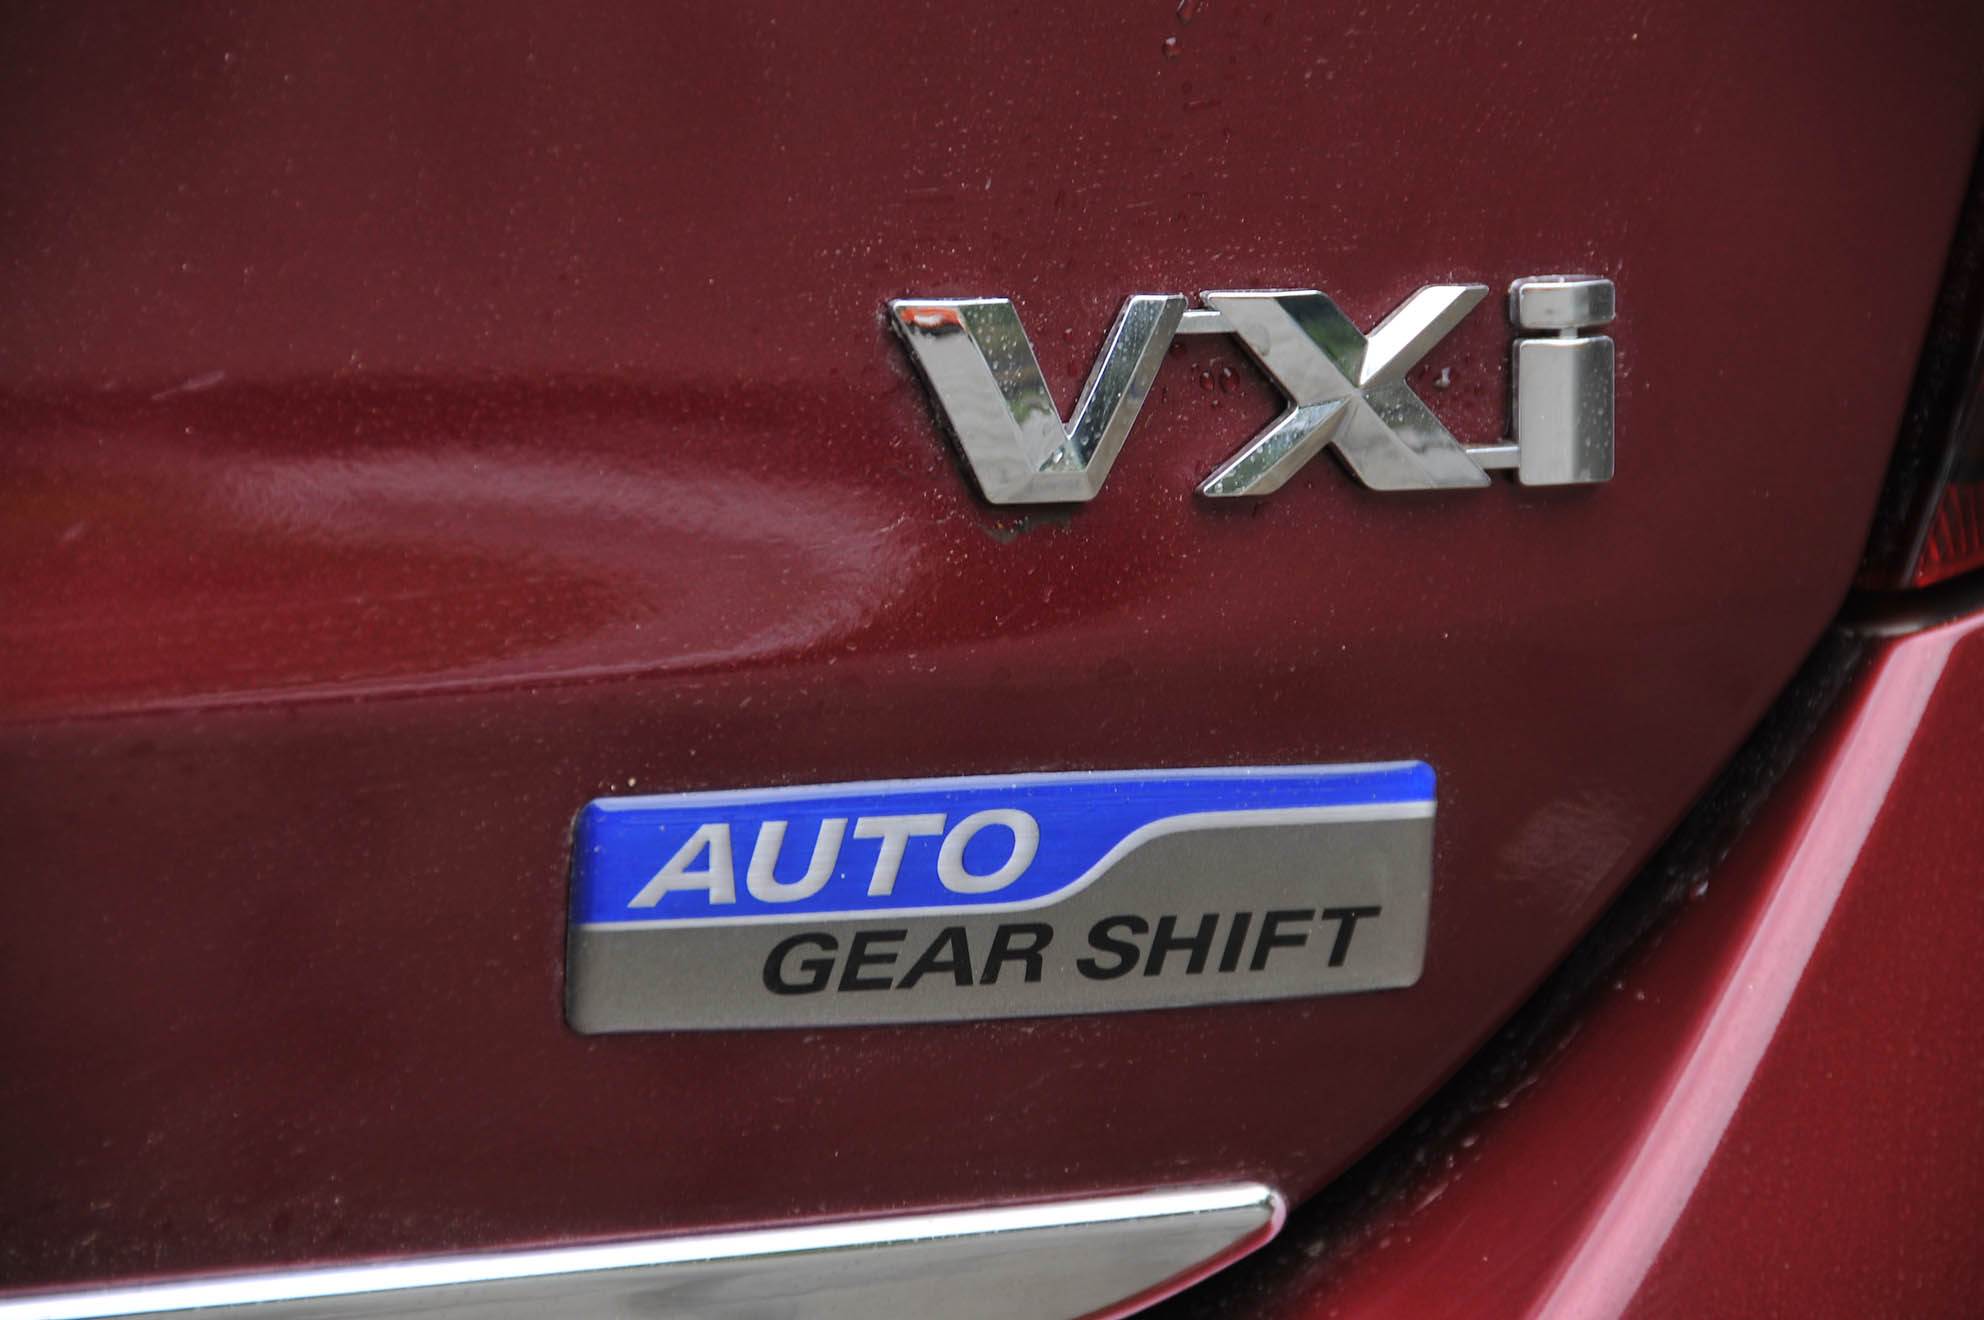 Maruti Suzuki Celerio VXi Auto Gear Shift Car